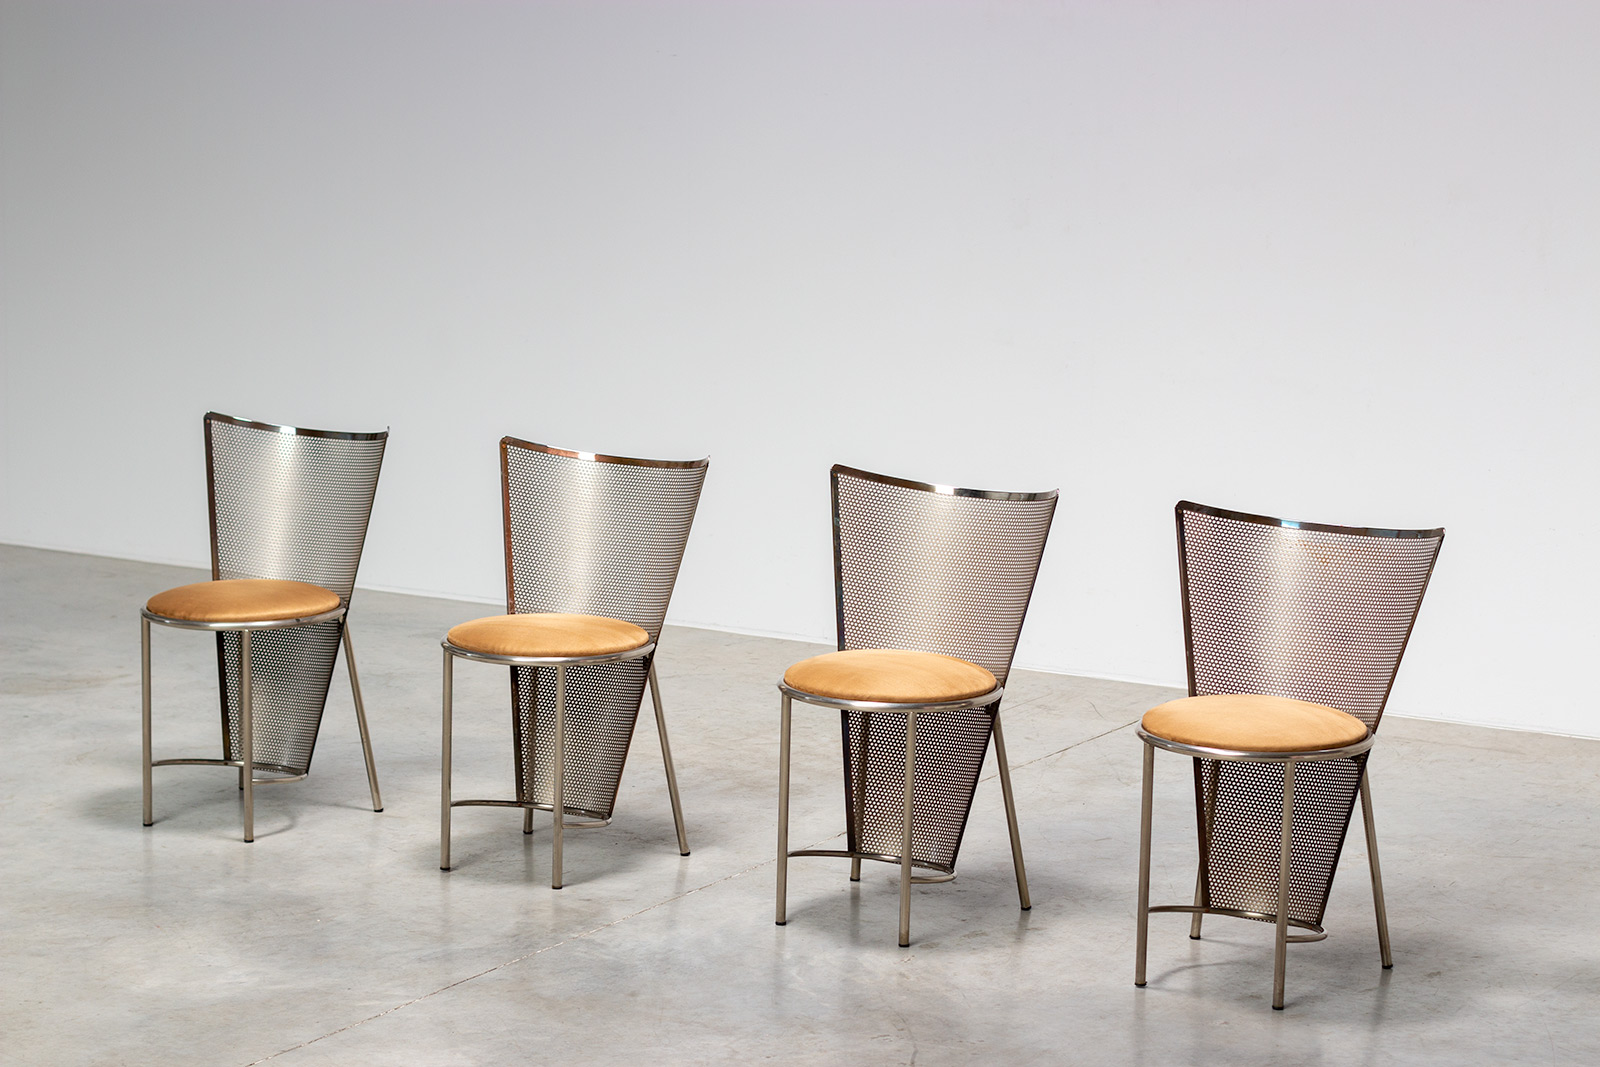 Frans Van Praet four postmodern Sevilla chairs for the world expo 92